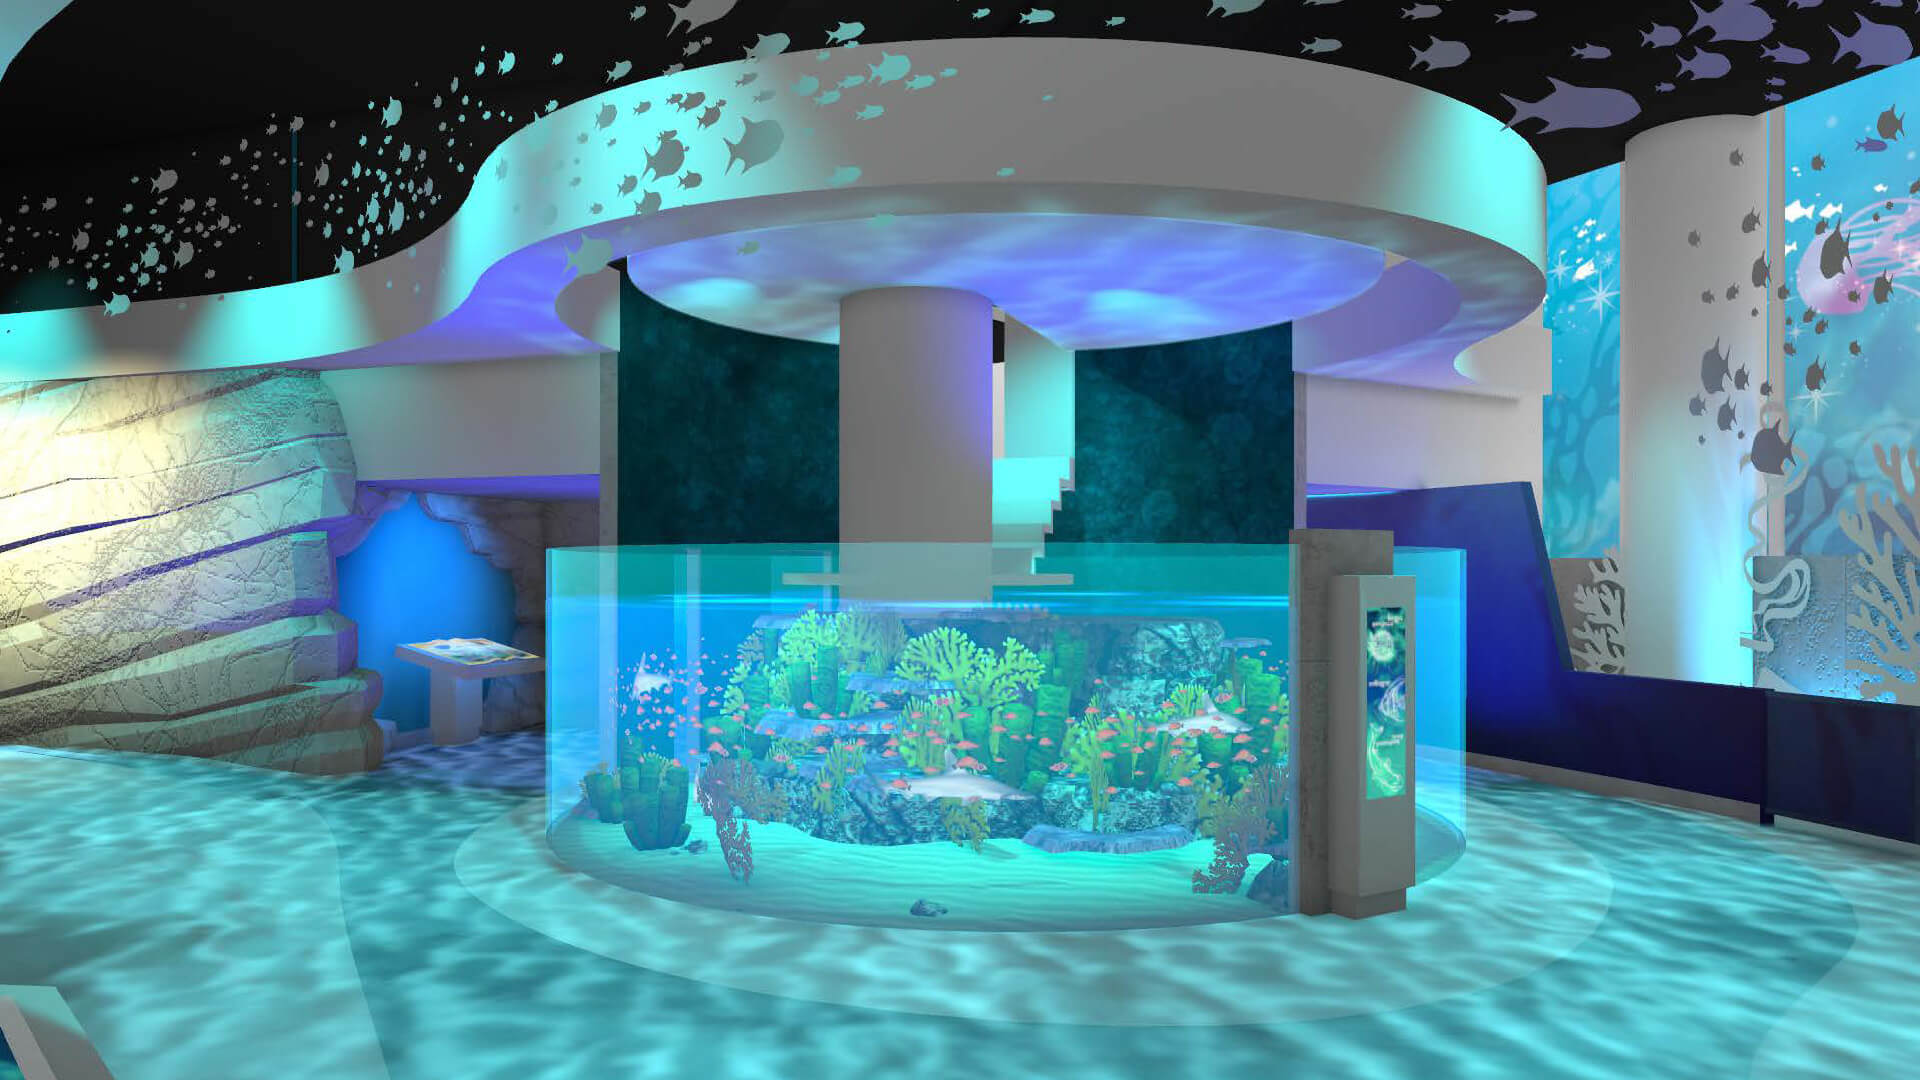 Life ocean exhibit rendering